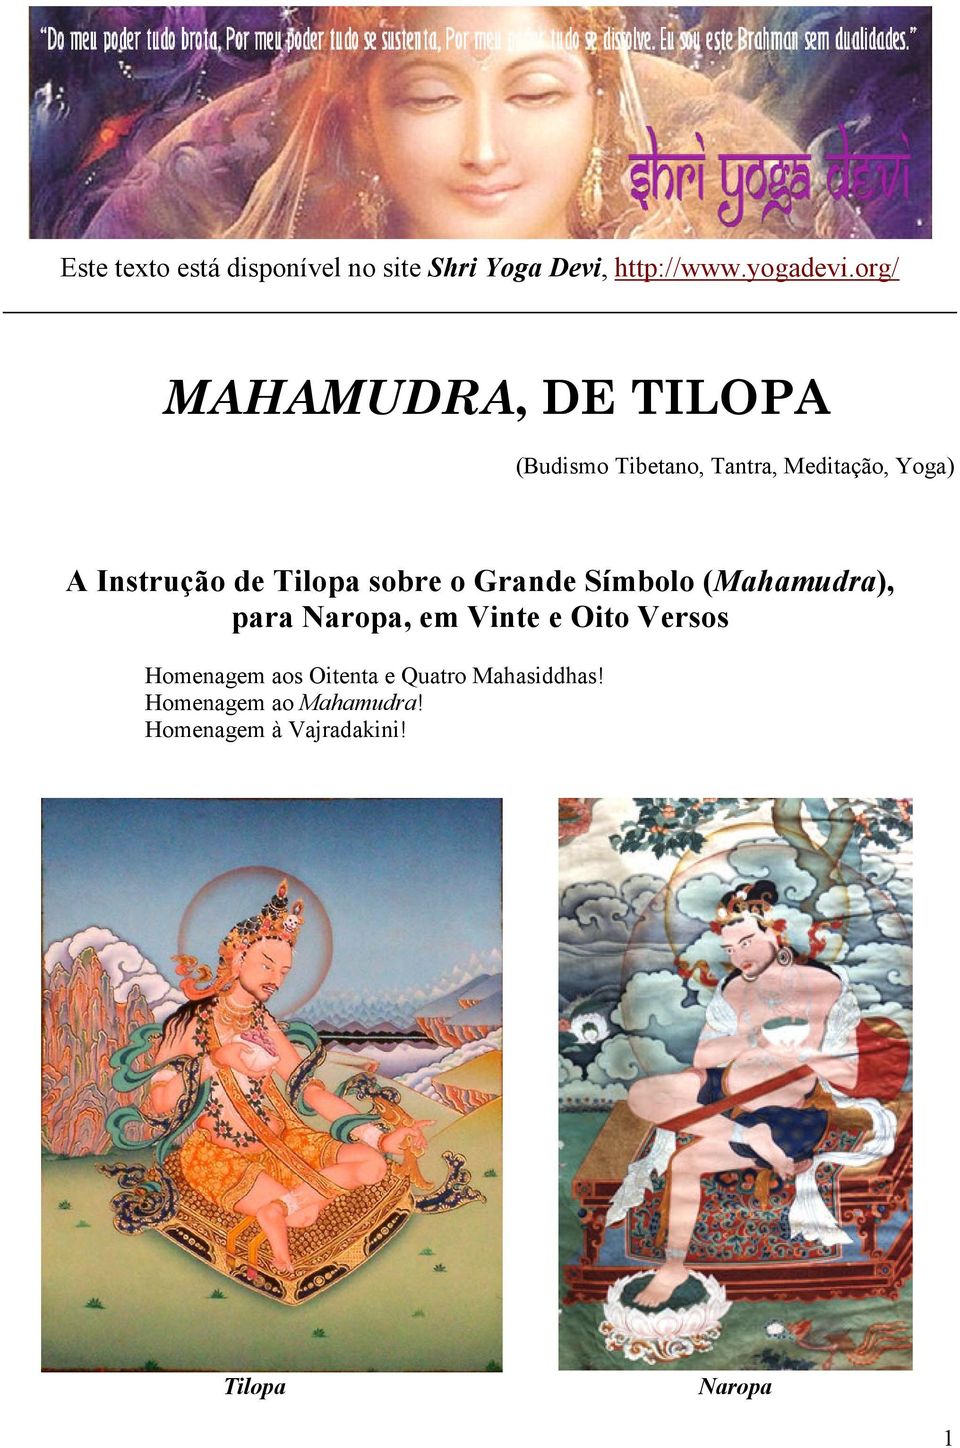 Tilopa sobre o Grande Símbolo (Mahamudra), para Naropa, em Vinte e Oito Versos